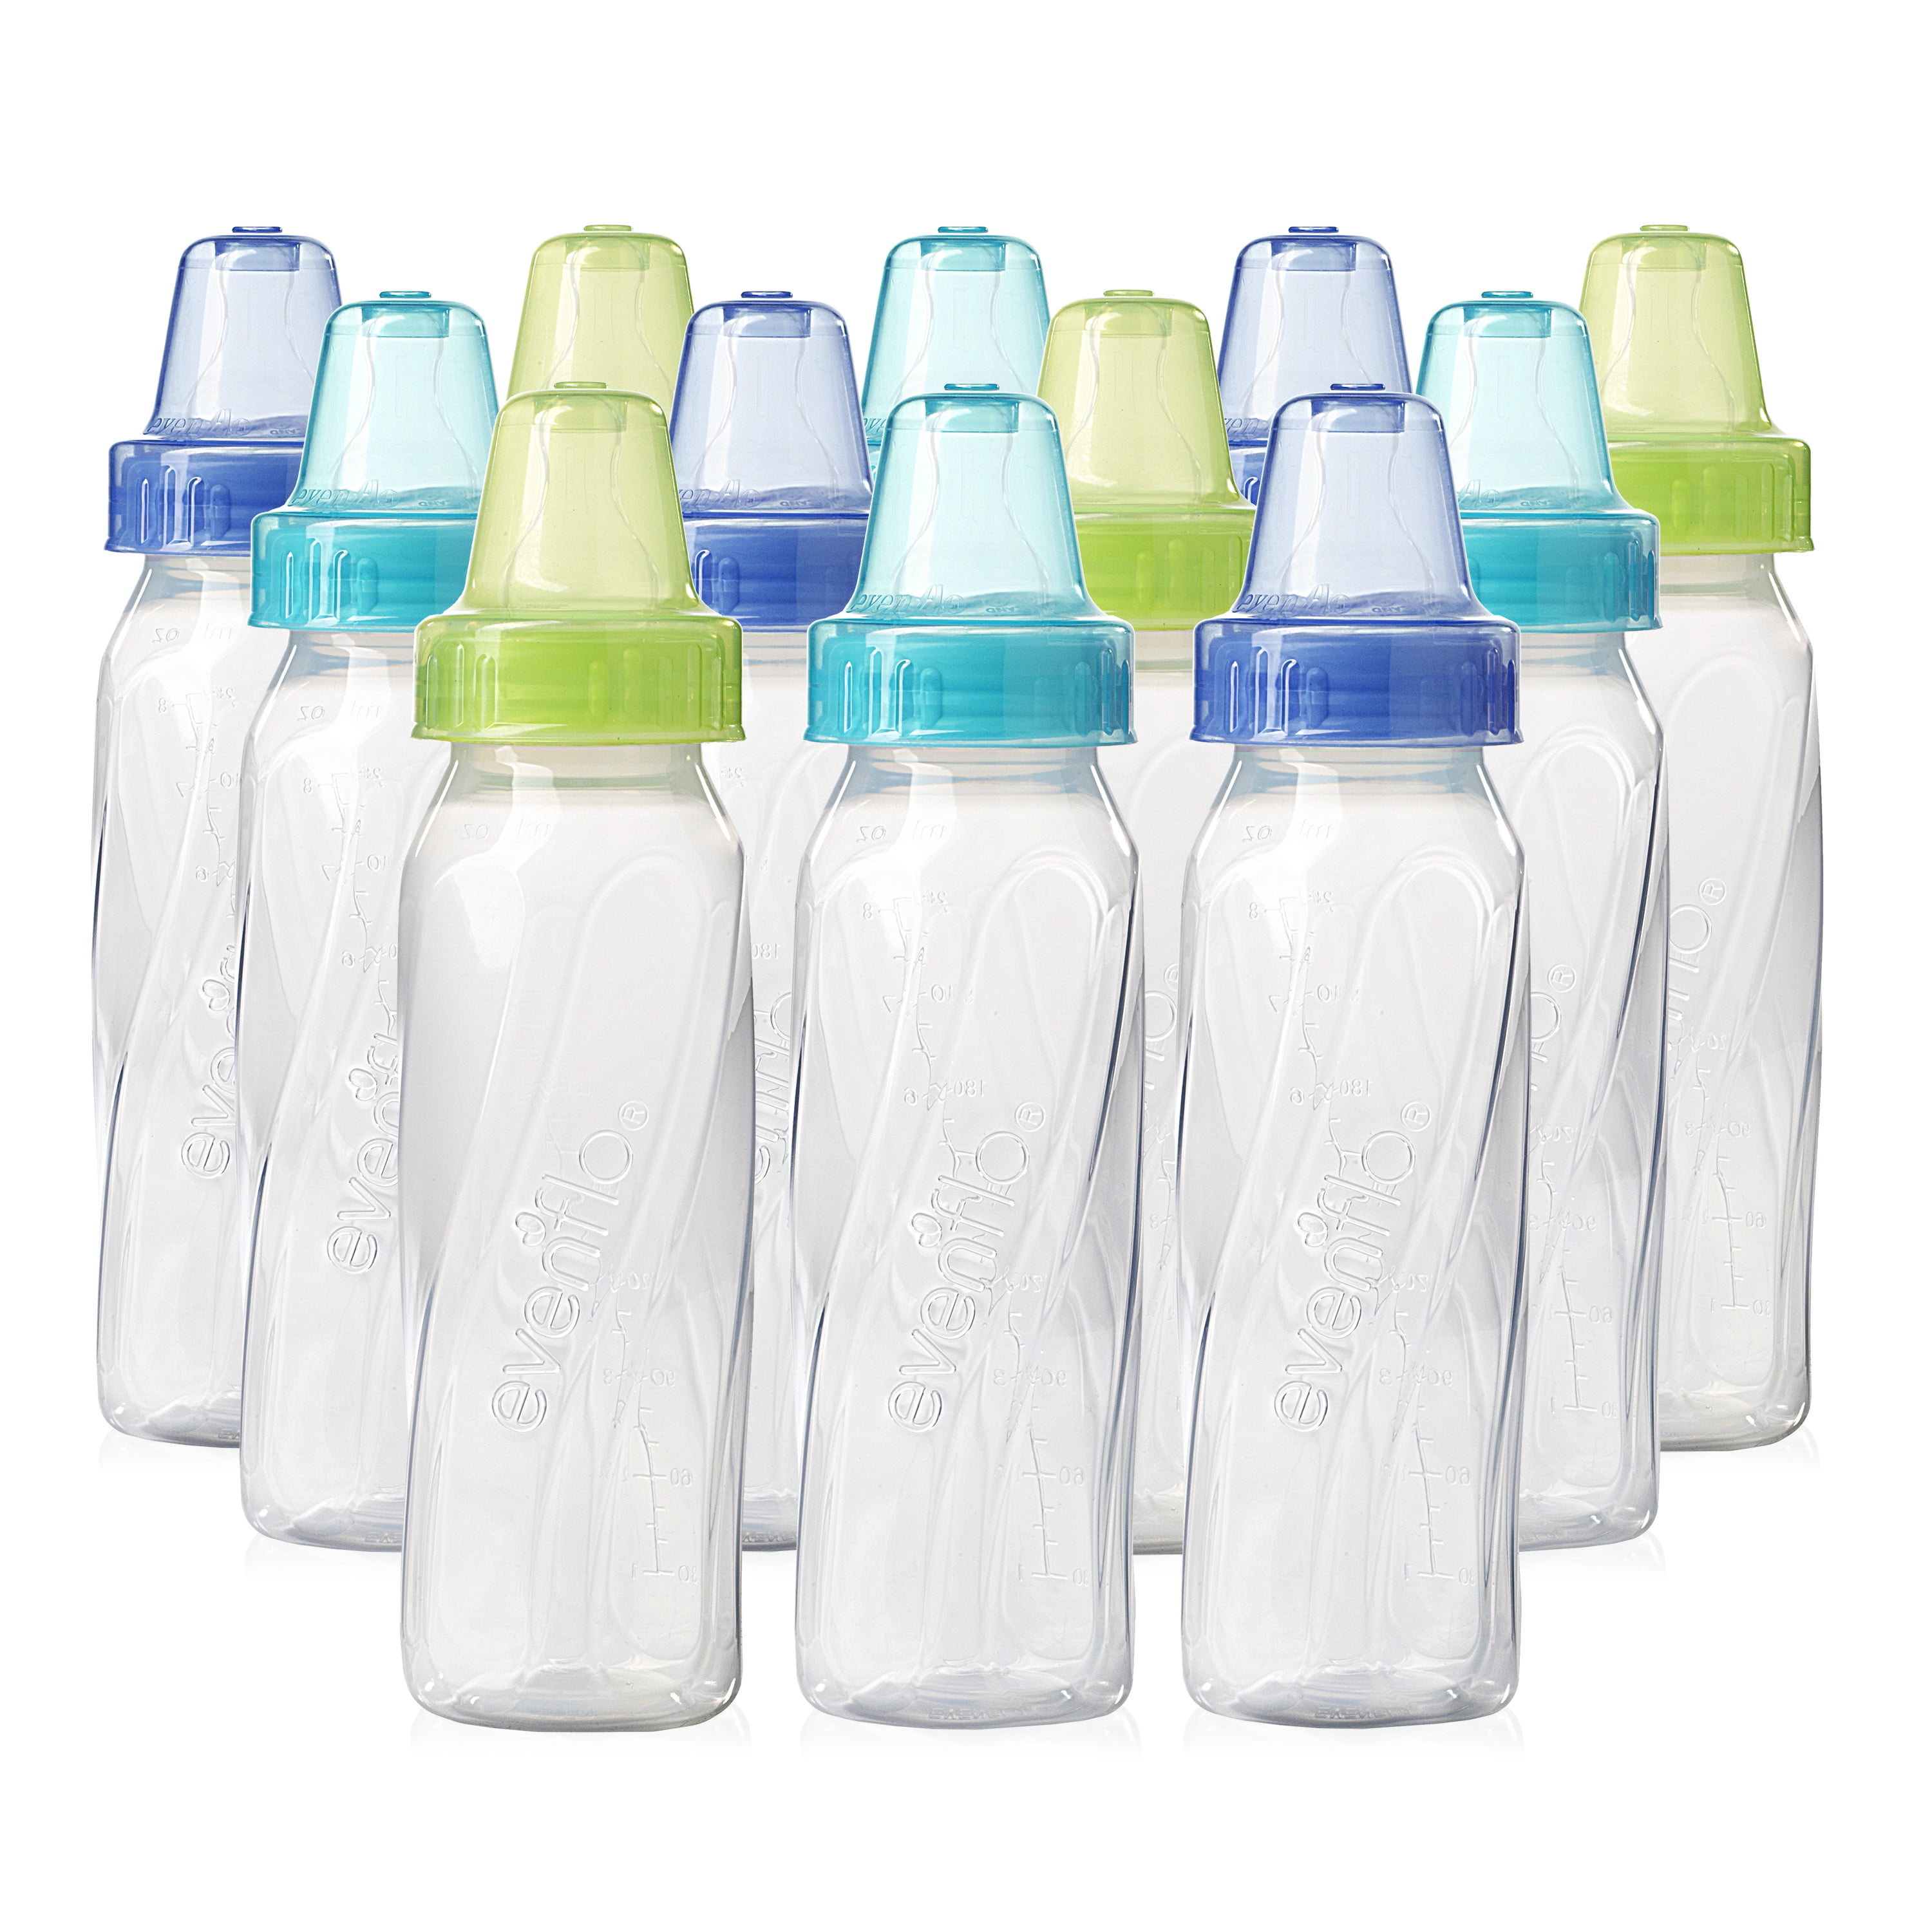 bpa free baby bottles